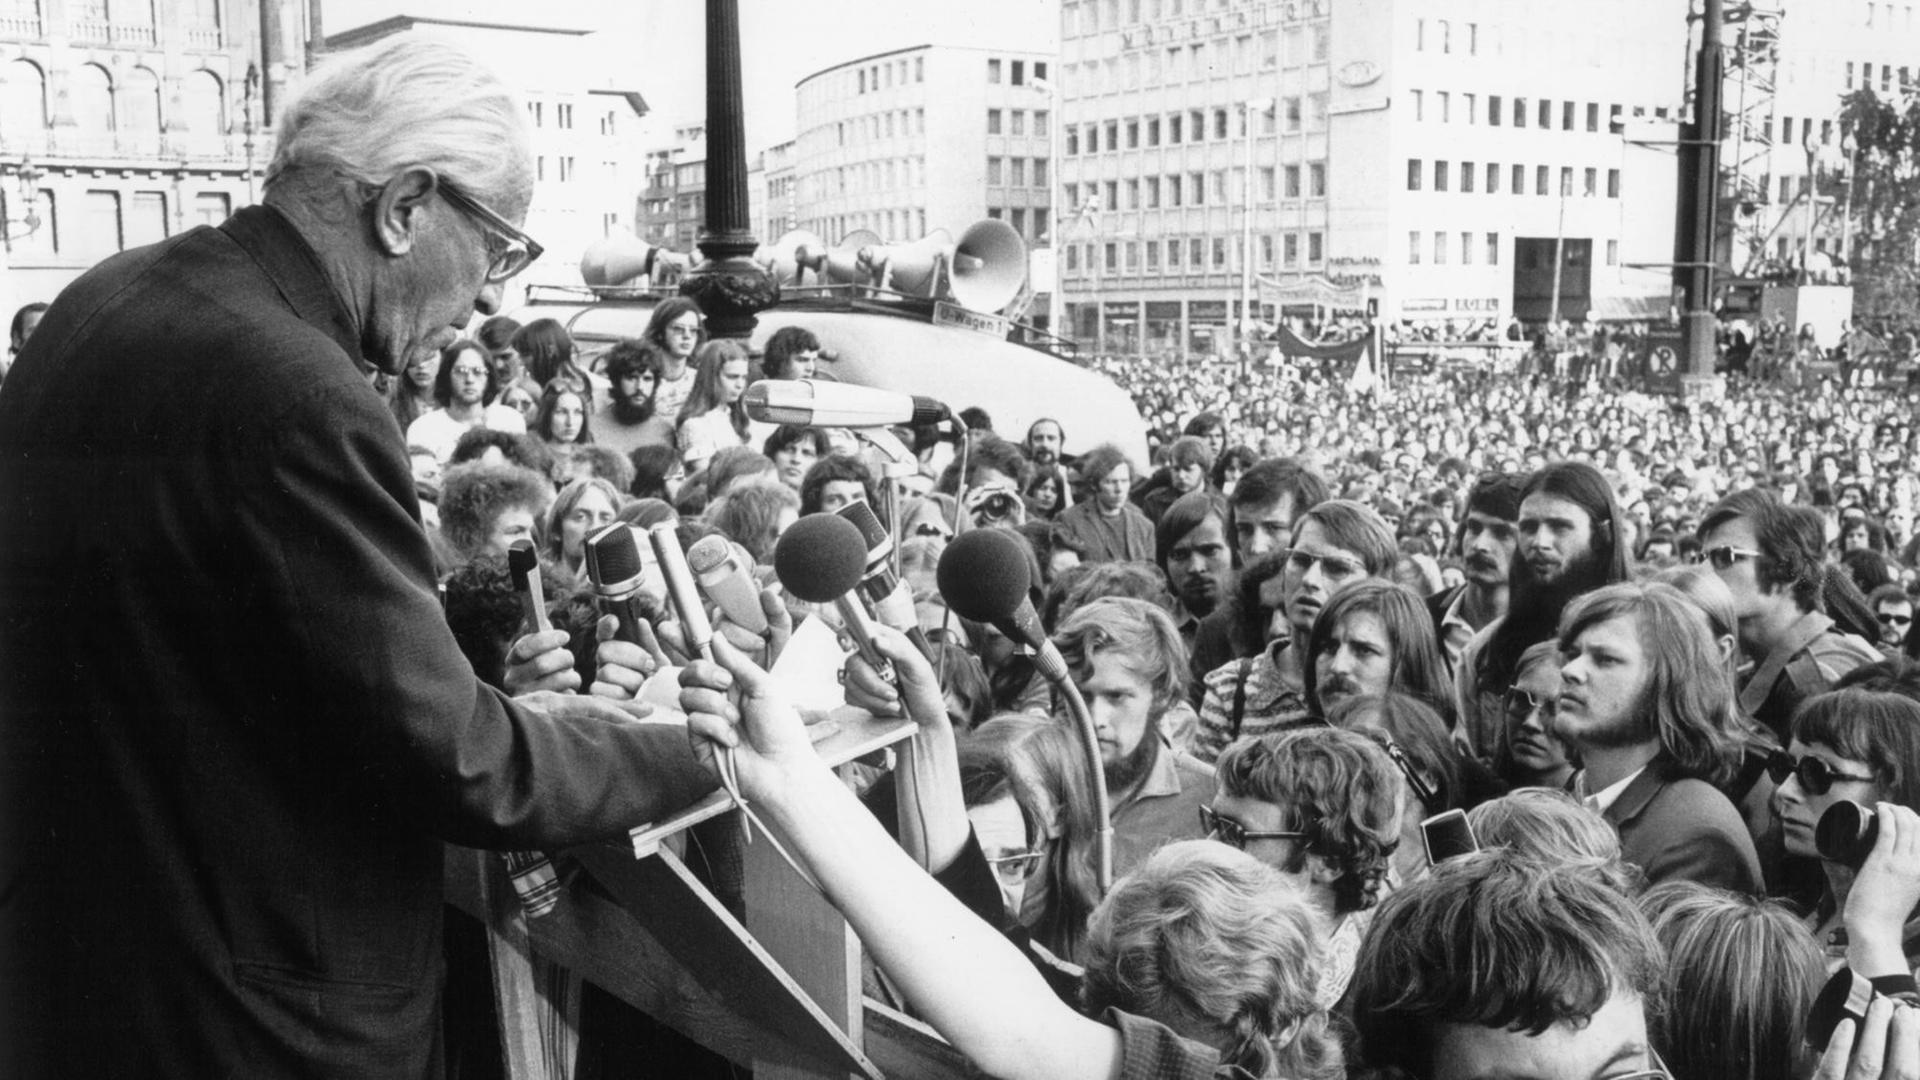 Der deutsch-amerikanische Philosoph und Soziologe, geistiger "Altvater" der linken deutschen Studentenbewegung der 60er Jahre, spricht während einer Kundgebung des Angela-Davis-Solidaritätskomitees am 3. Juni 1972 auf dem Frankfurter Opernplatz.